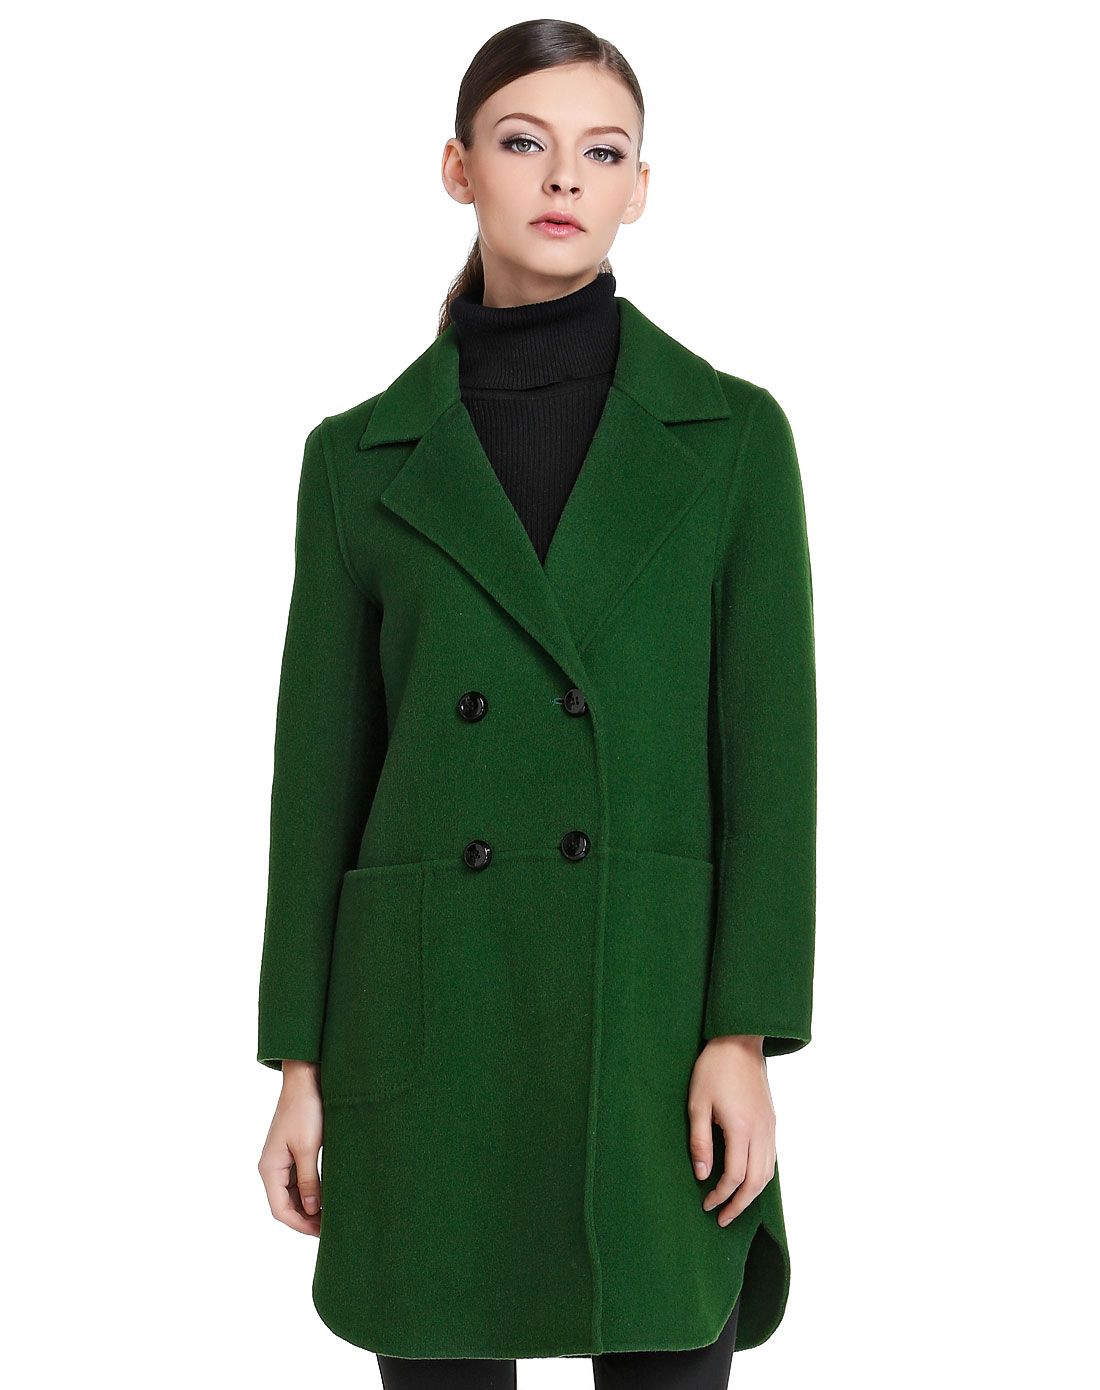 蕾朵liedow女装专场 深绿色职场干练气质长袖长款羊毛大衣